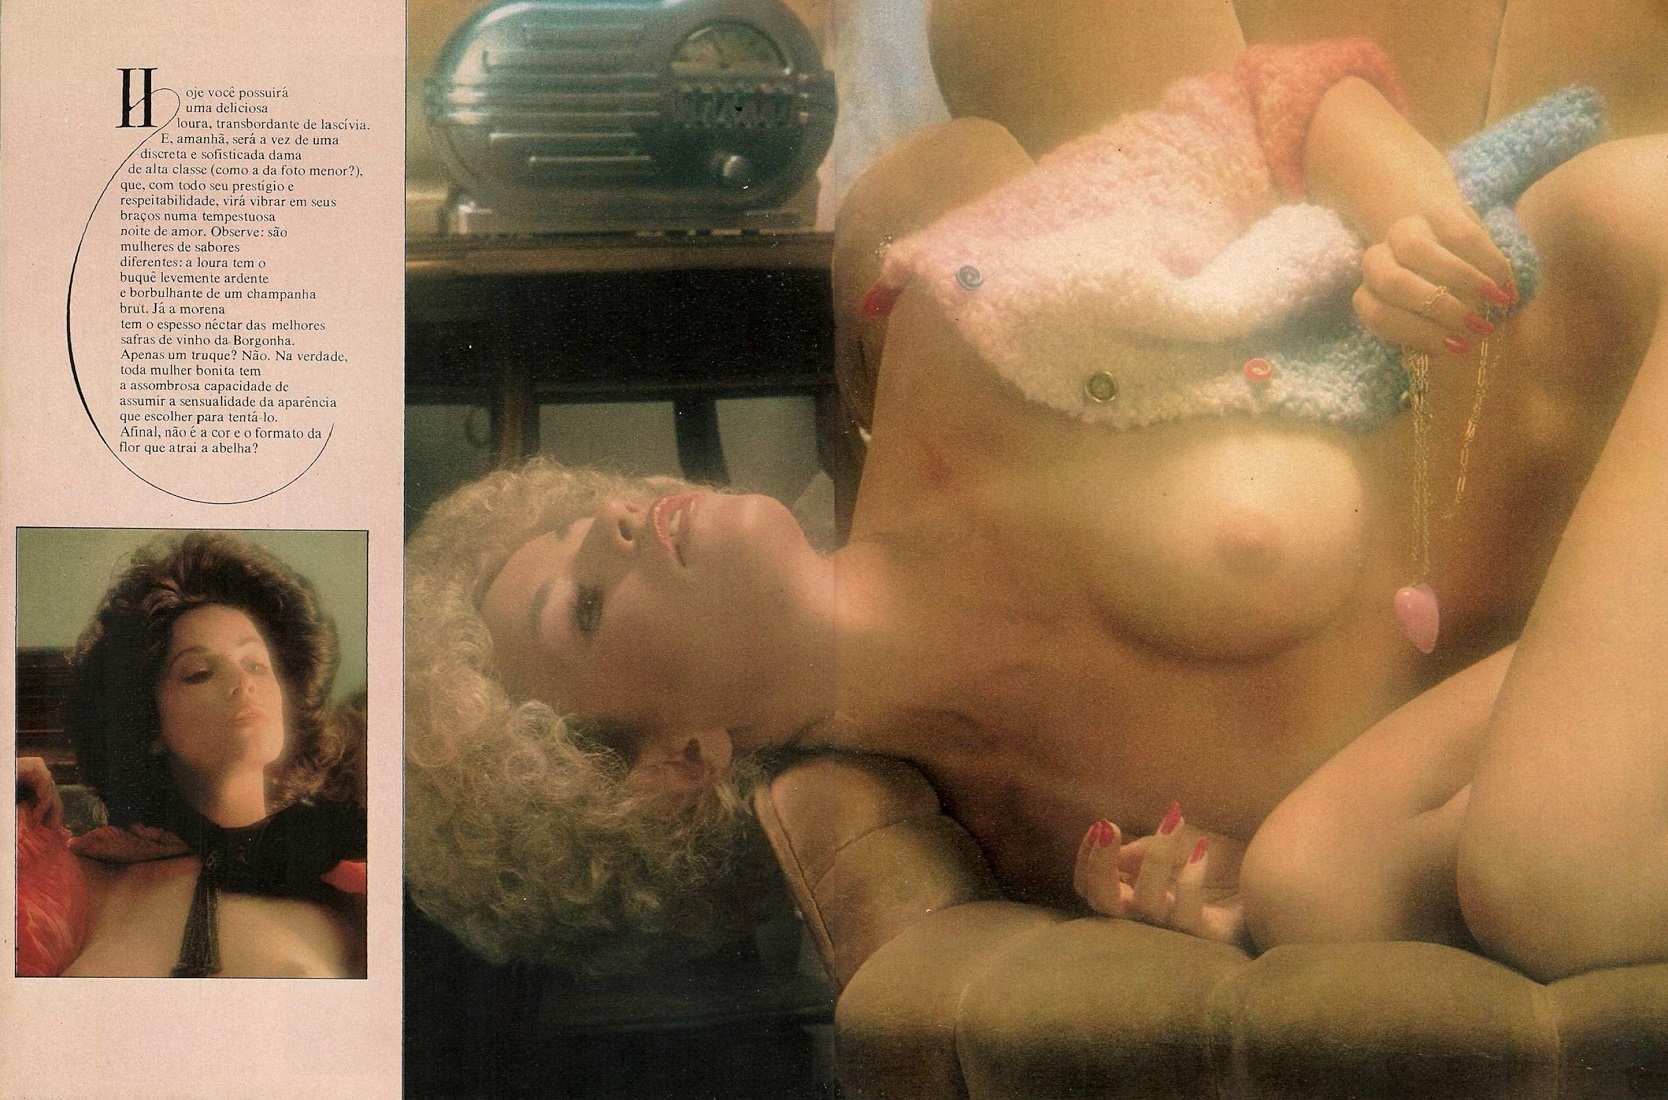 Playboy Junho de 1978